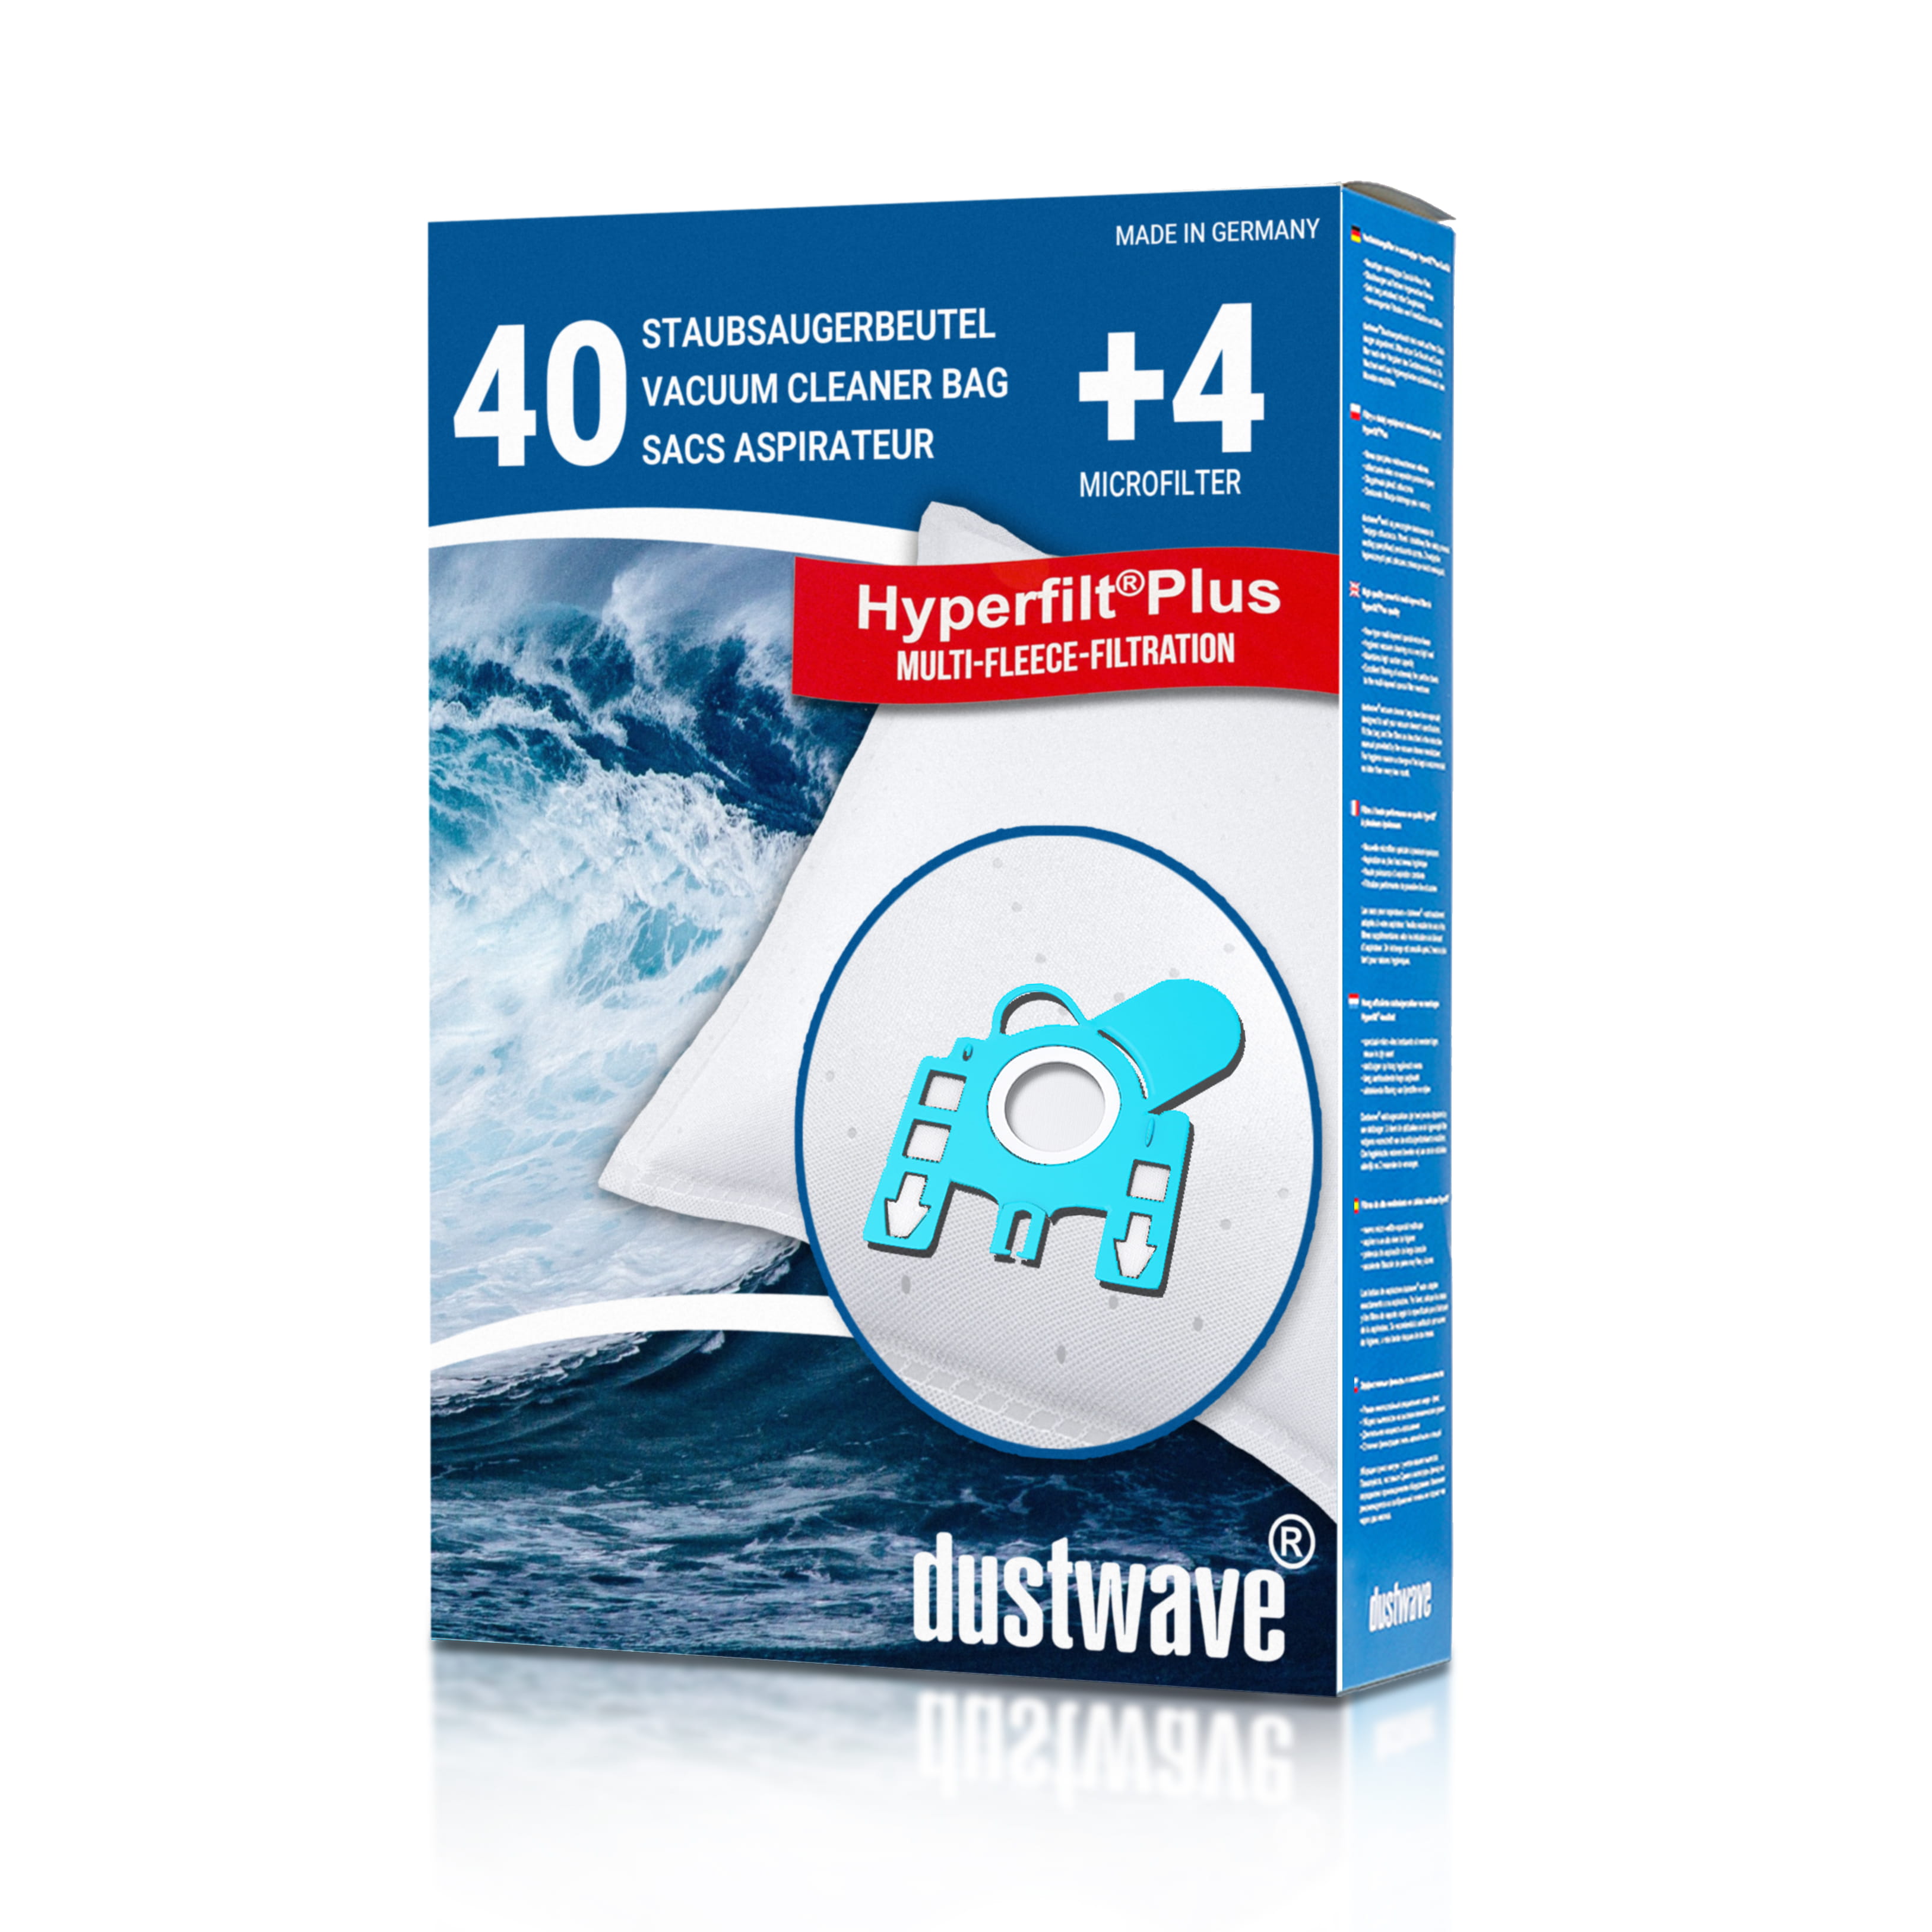 Dustwave® 40 Staubsaugerbeutel für Hoover H 72 / H72 - hocheffizient, mehrlagiges Mikrovlies mit Hygieneverschluss - Made in Germany